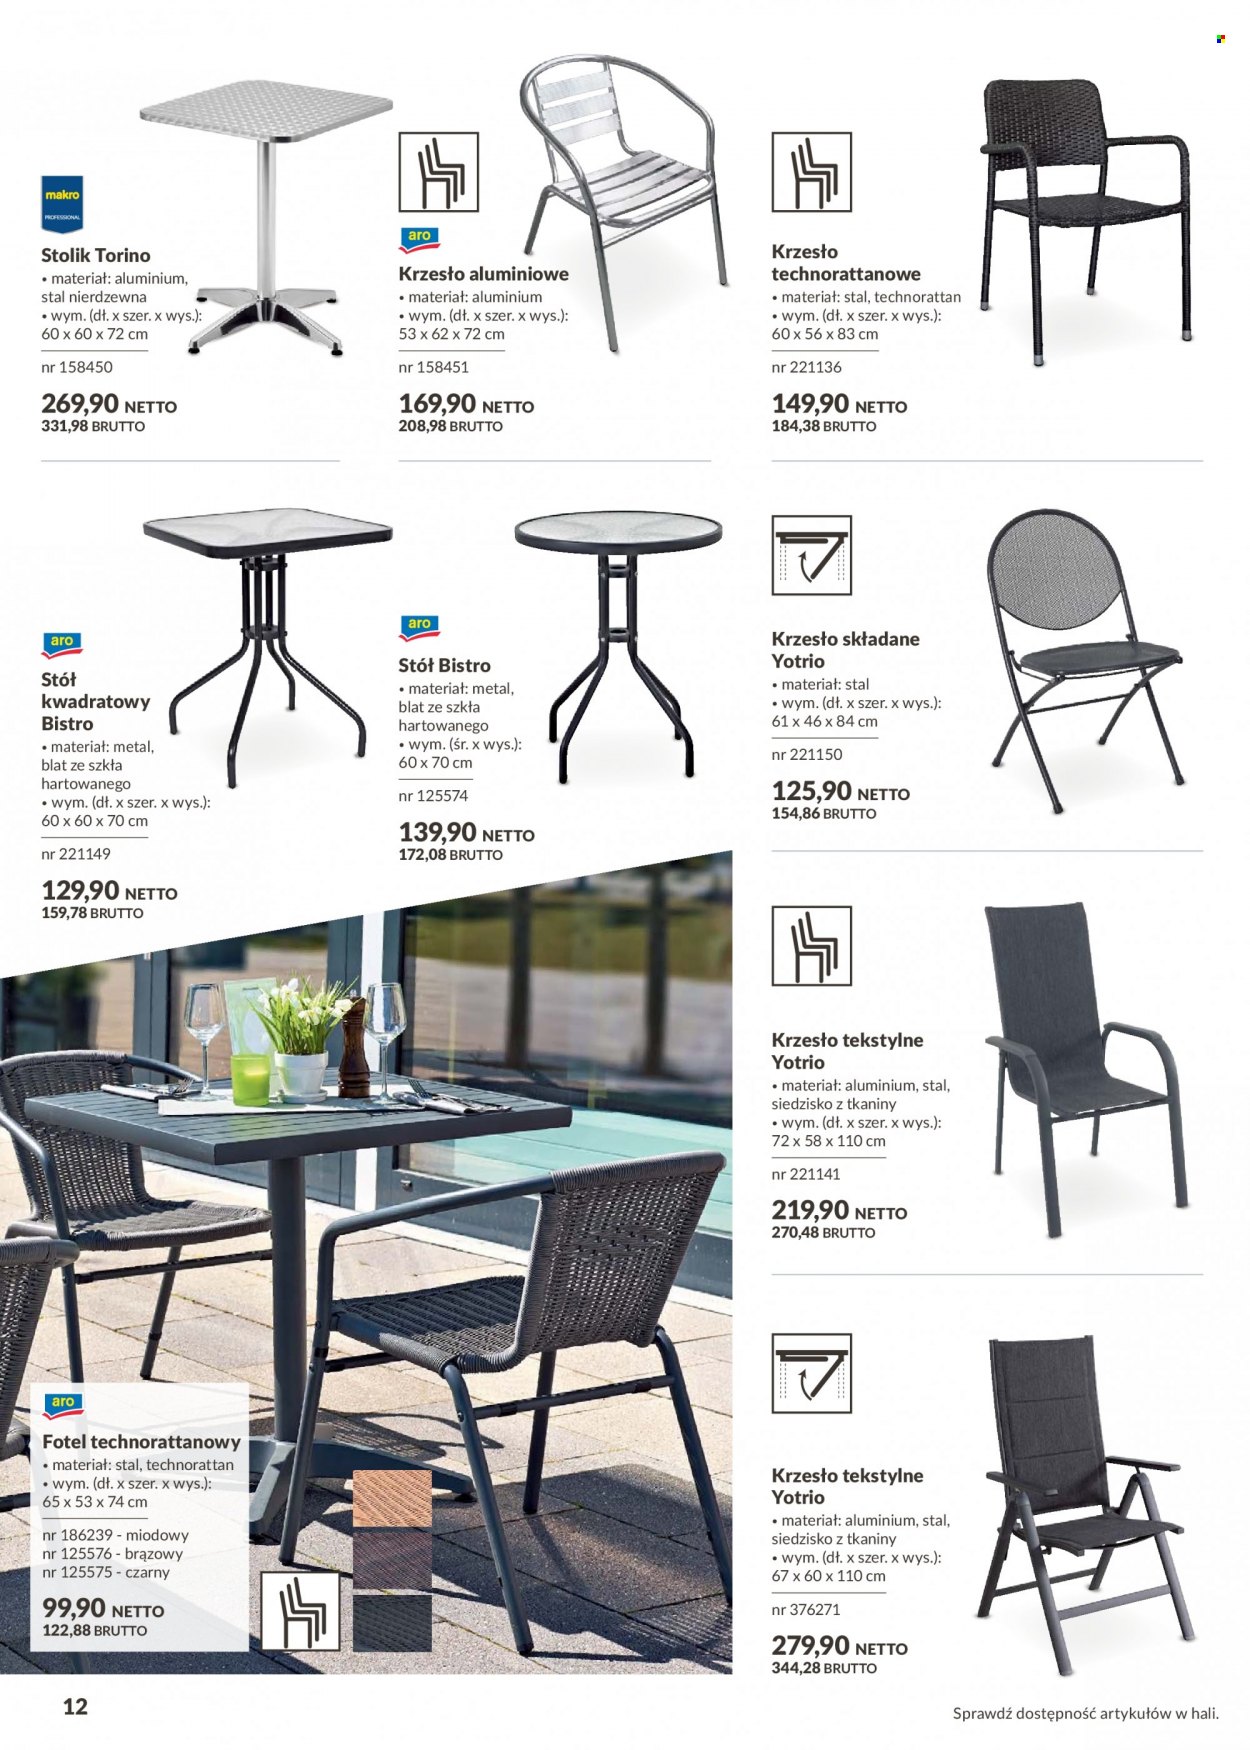 Gazetka Makro - Produkty w akcji - stolik, stół, krzesło, fotel, krzesło składane. Strona 12.